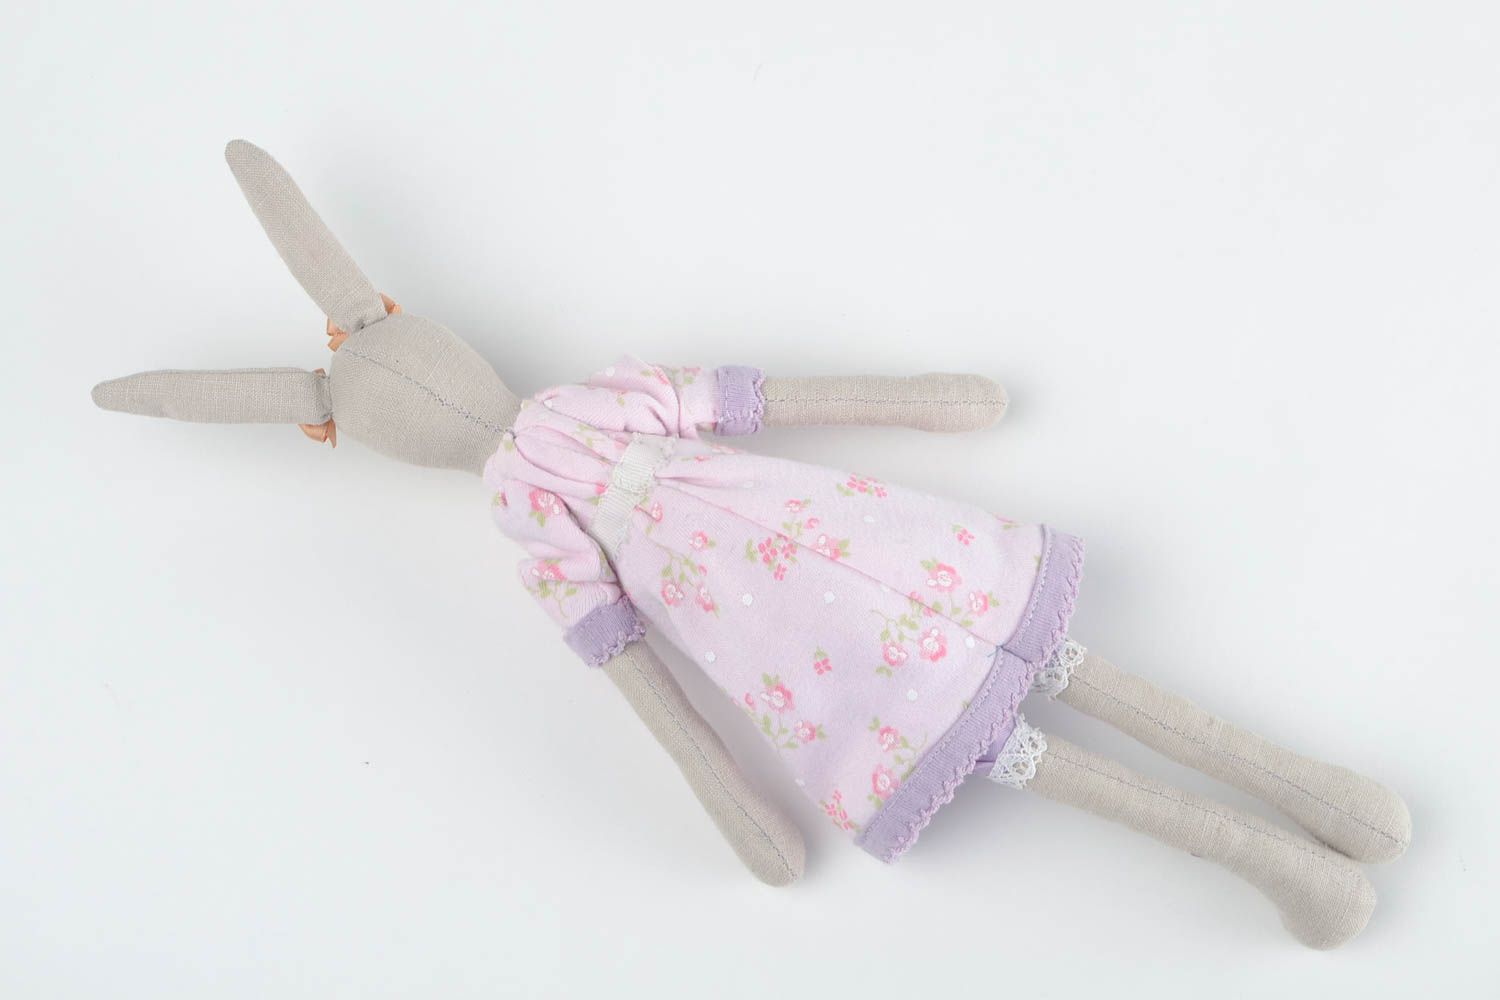 Игрушка заяц авторская игрушка ручной работы из ткани мягкая игрушка для ребенка фото 5